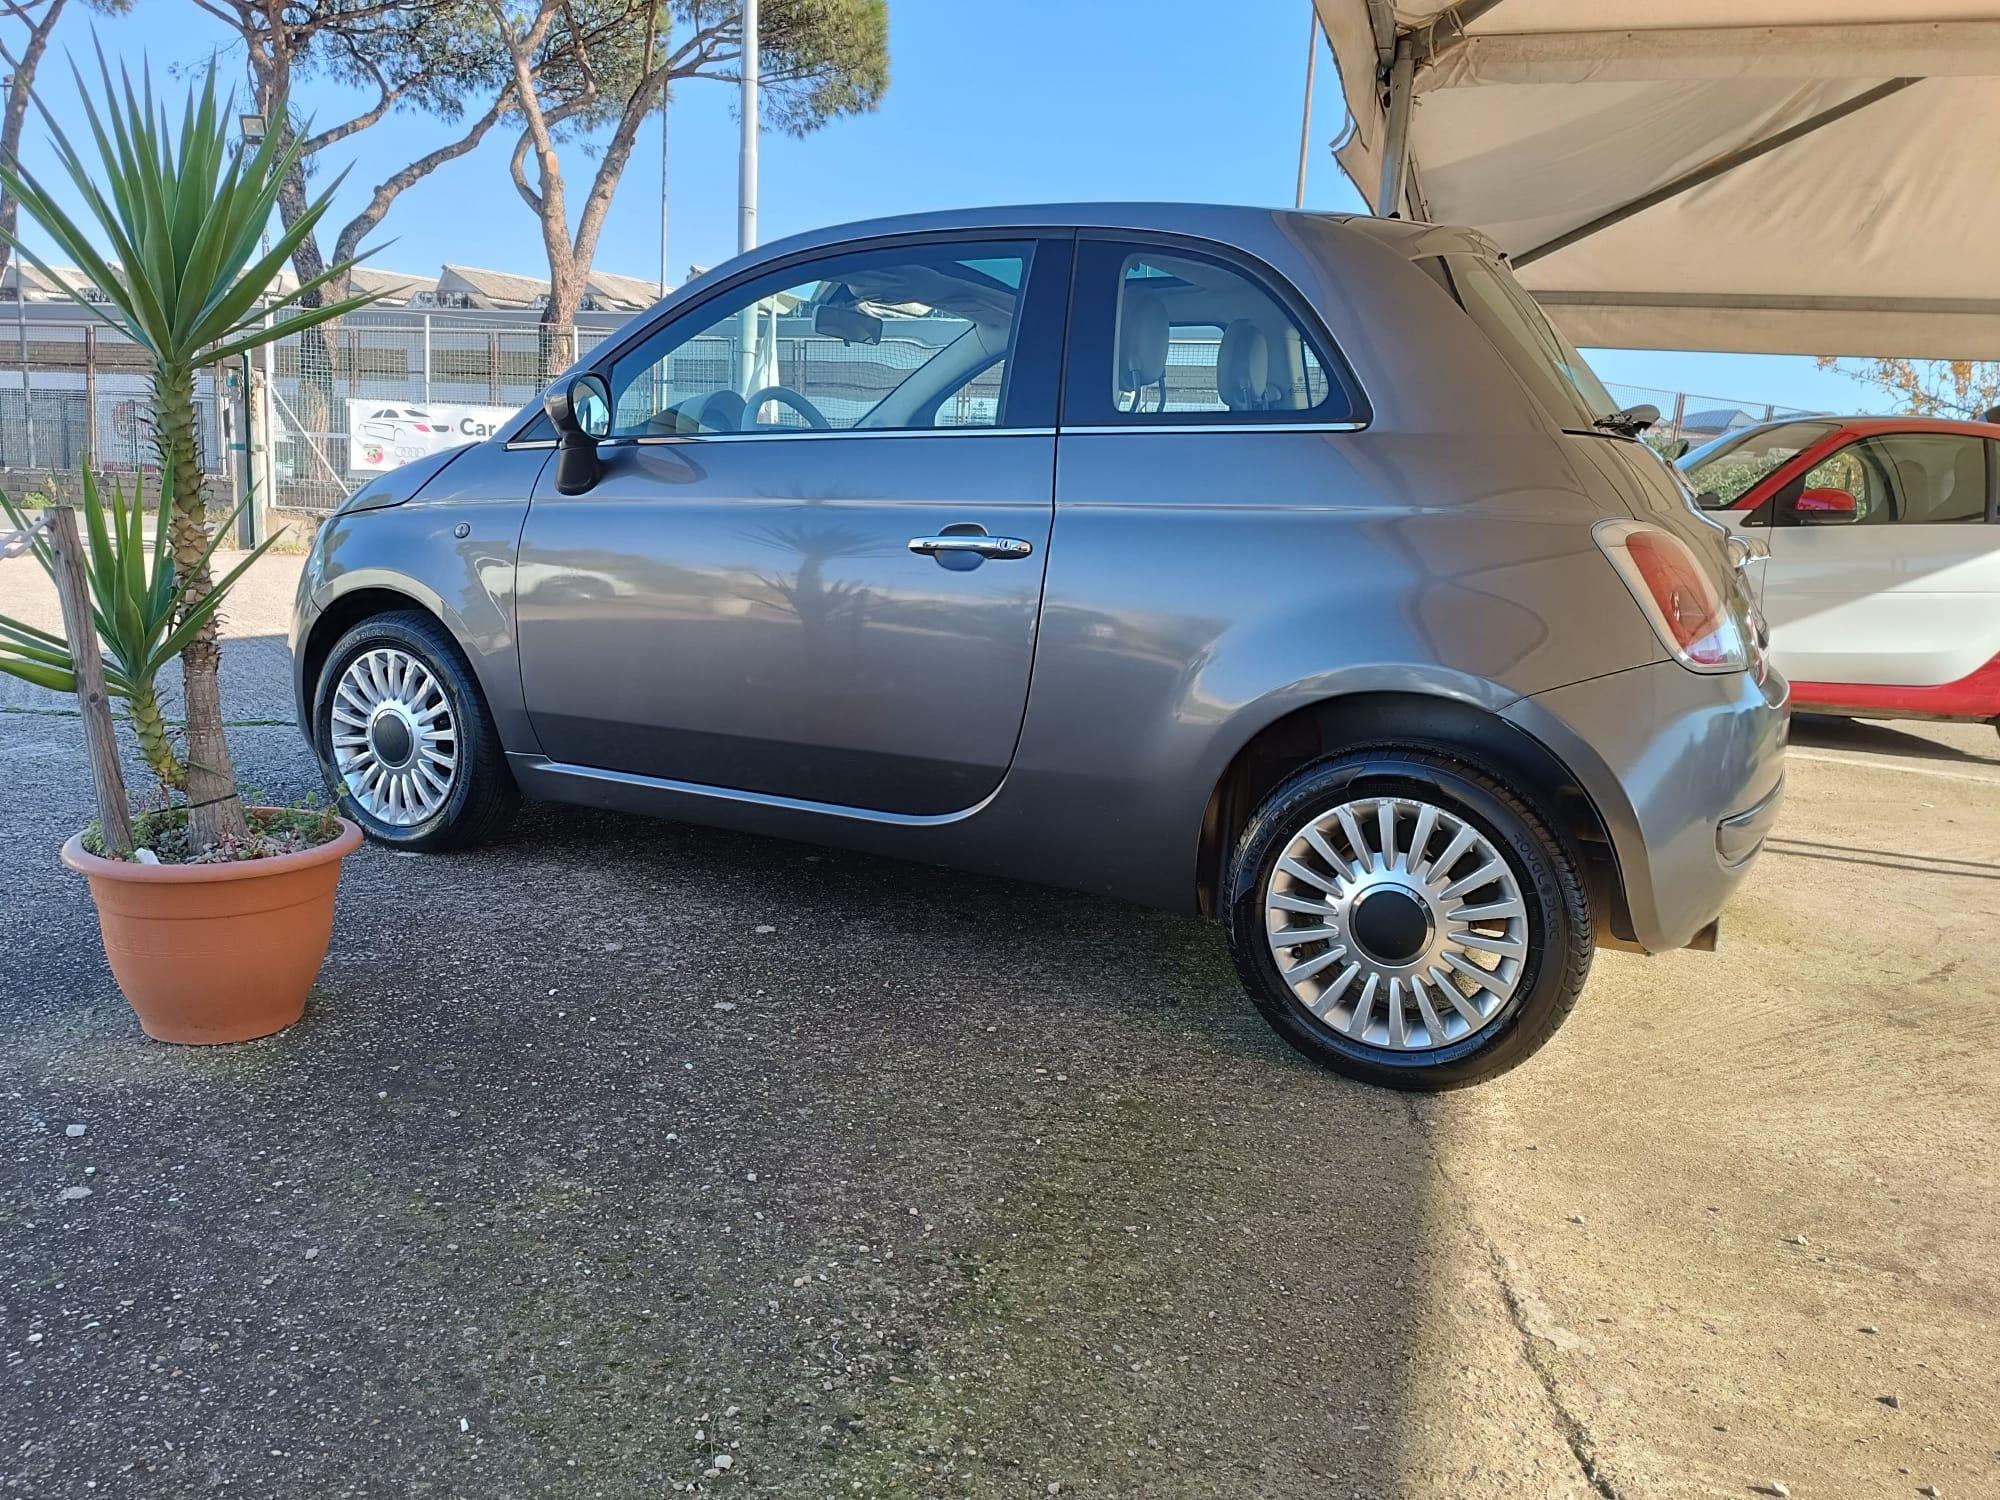 Fiat 500 1.2  Automatica!! 2011 Uni Pro Km 136.000 Garanzia Finanziamento